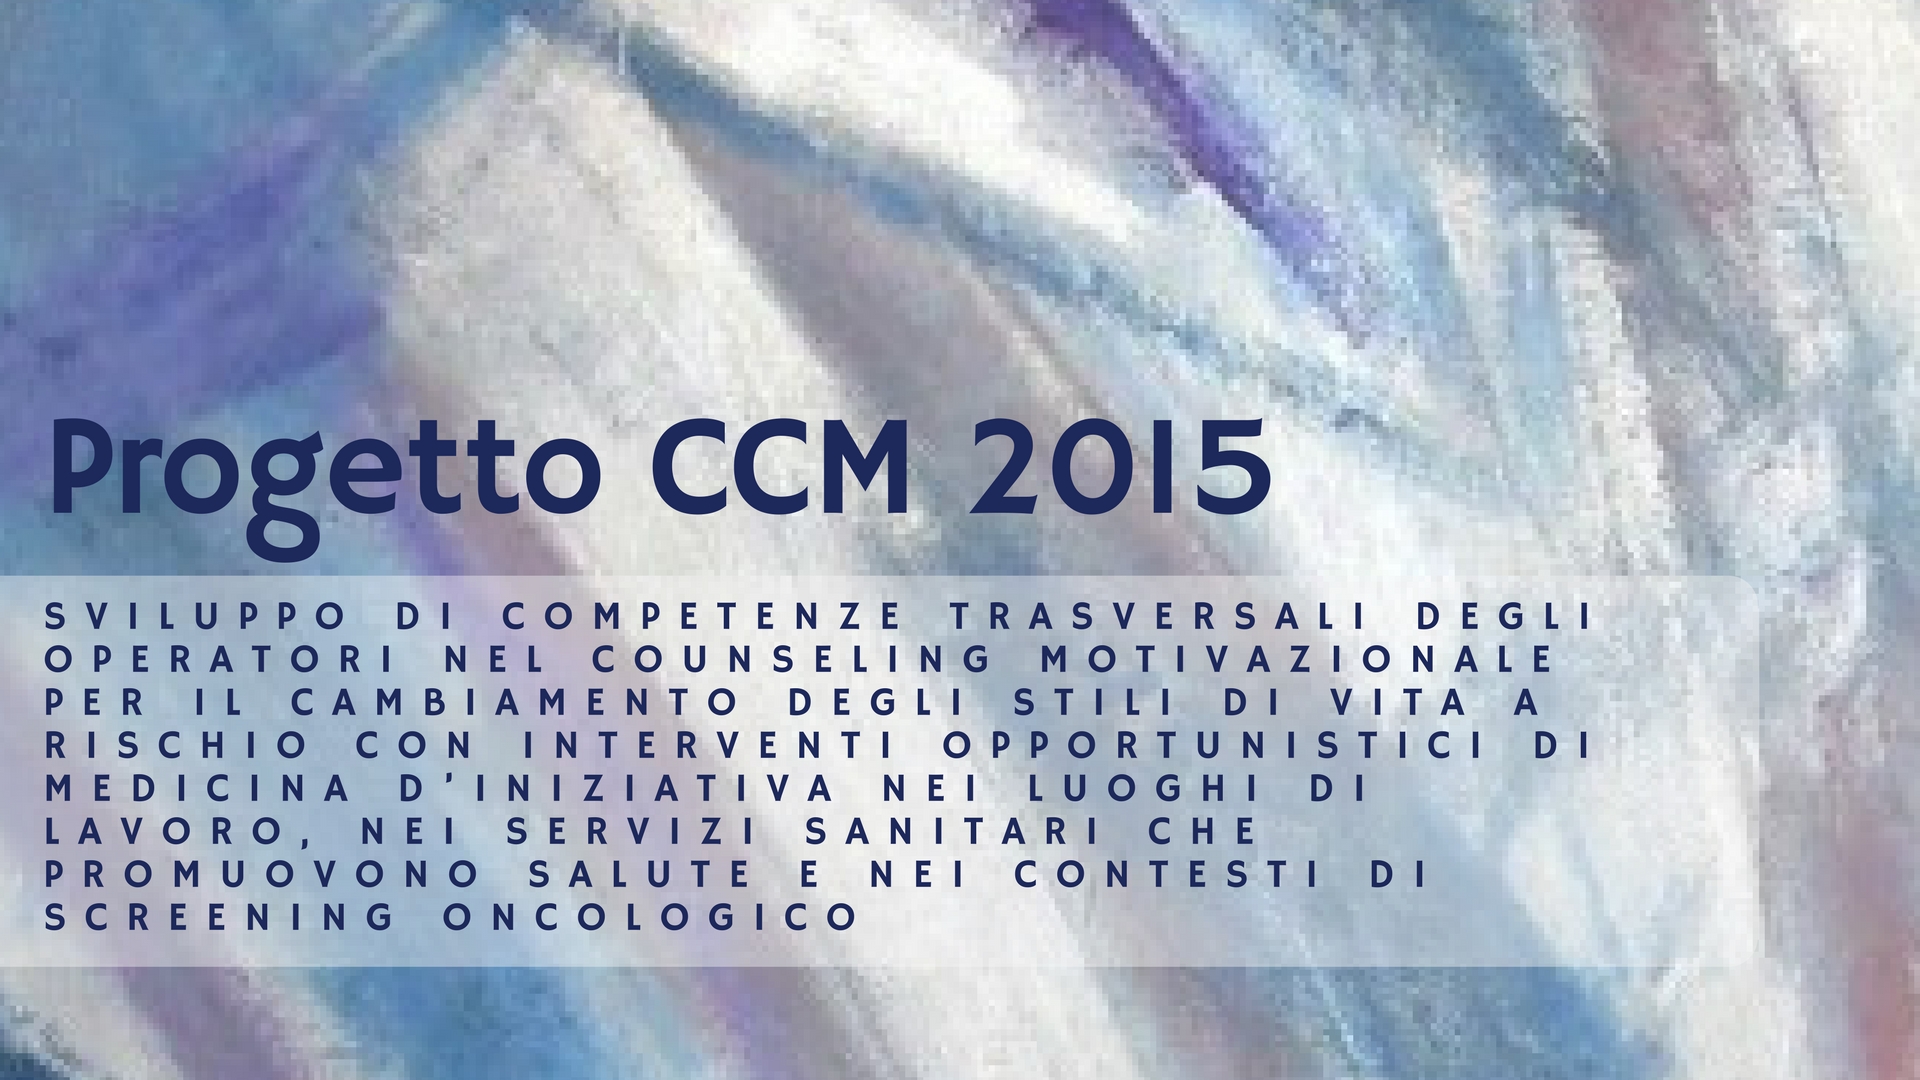 CCM 2015 - Sviluppo di competenze trasversali degli operatori nel counseling motivazionale